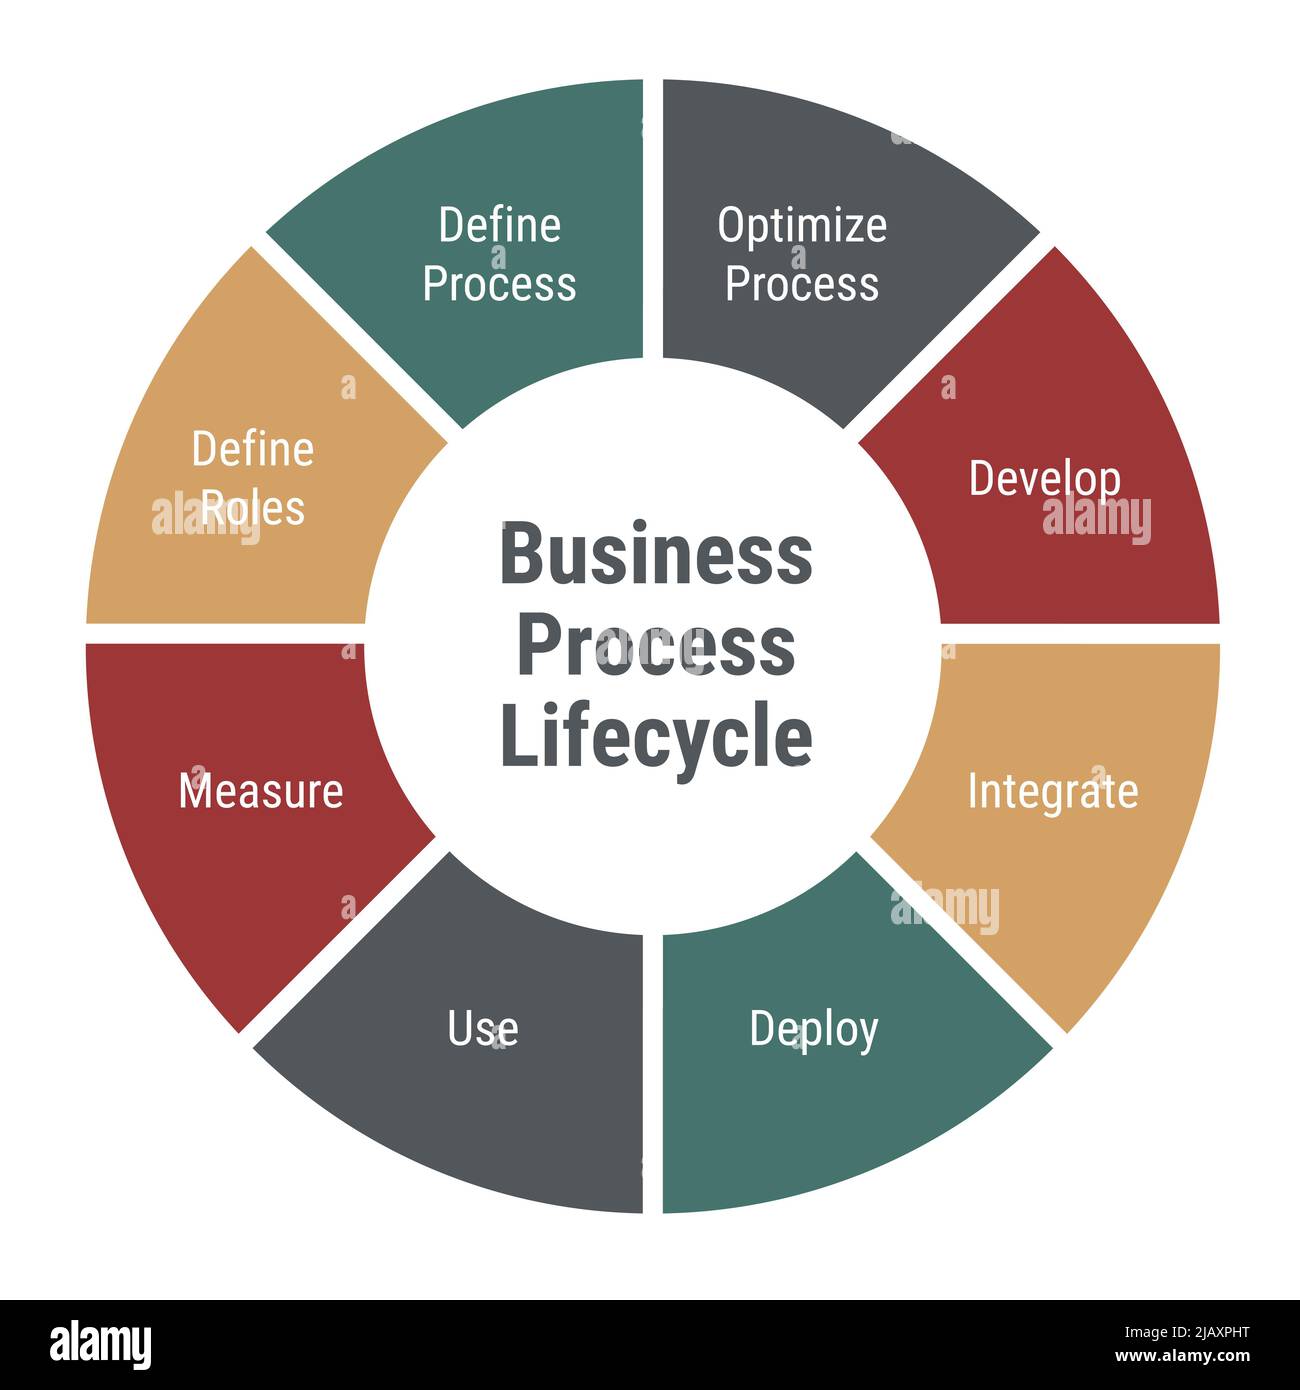 Lebenszyklusdiagramm für Geschäftsprozesse. Kreis-Infografik mit 8 Teilen und Text. Optimieren und entwickeln, integrieren, bereitstellen und verwenden, messen und definieren Sie Rollen. Stock Vektor